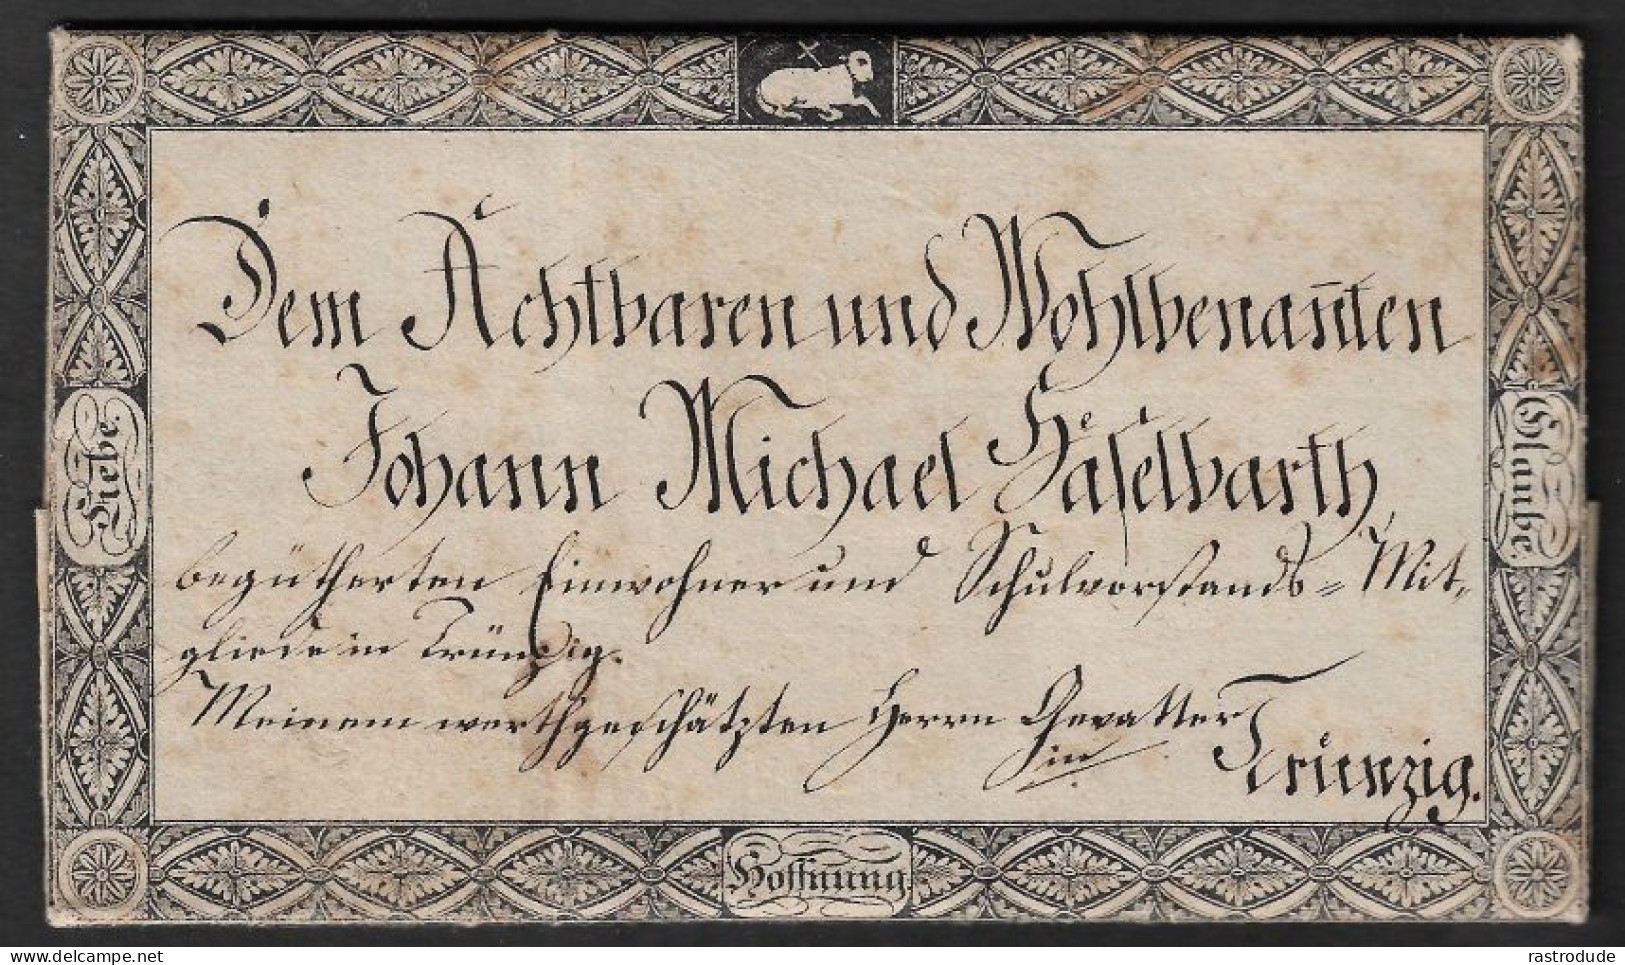 1839 WUNDERSCHÖNER FRÜHER ZIERBRIEF AUS TRÜNZIG, LANGENBERNSDORF, SACHSEN - EINLADUNG ZUR TAUFE - Saxony